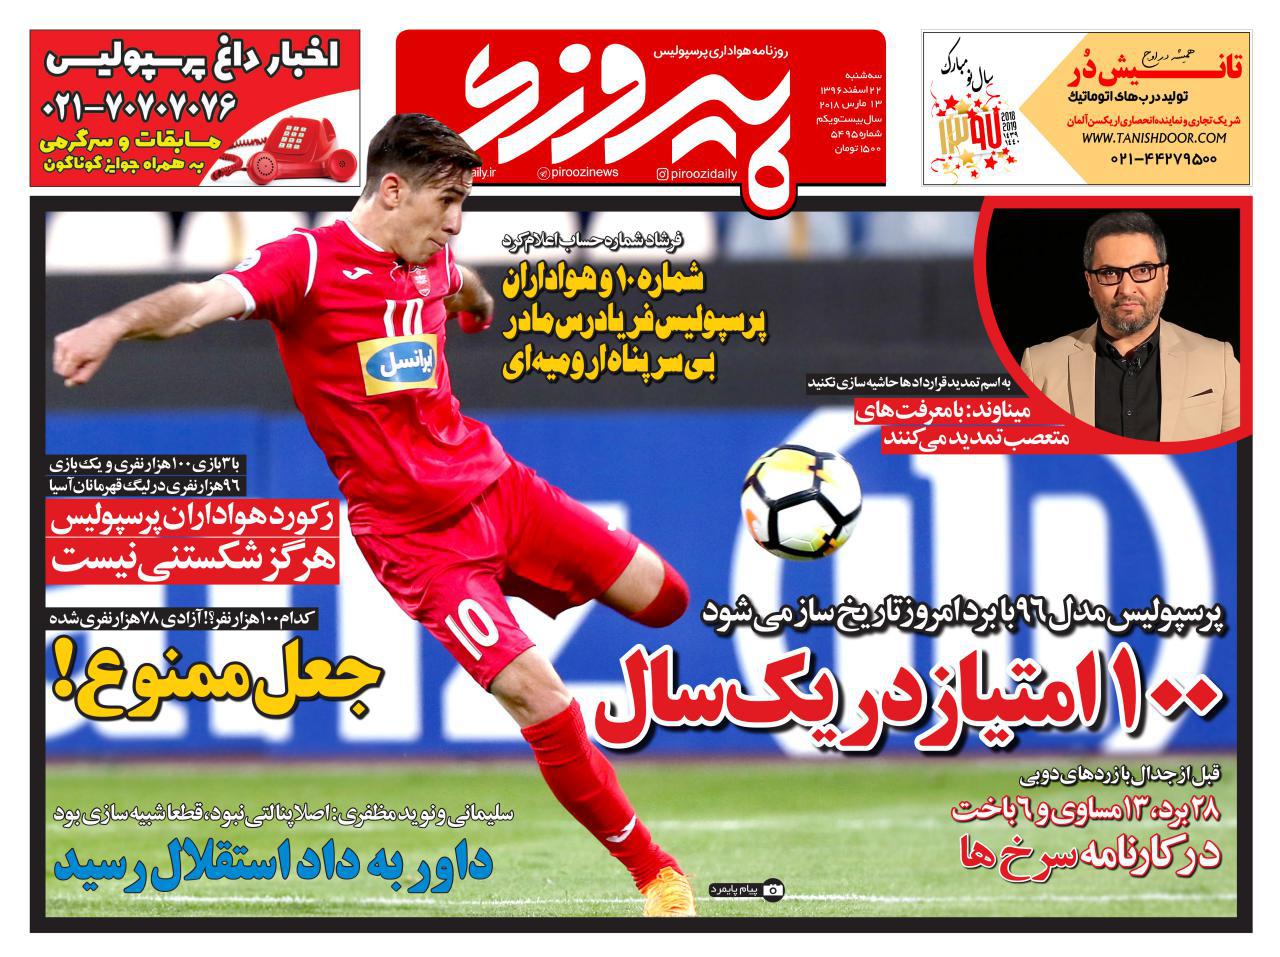 جلد روزنامه پیروزی، 22 اسفند 96